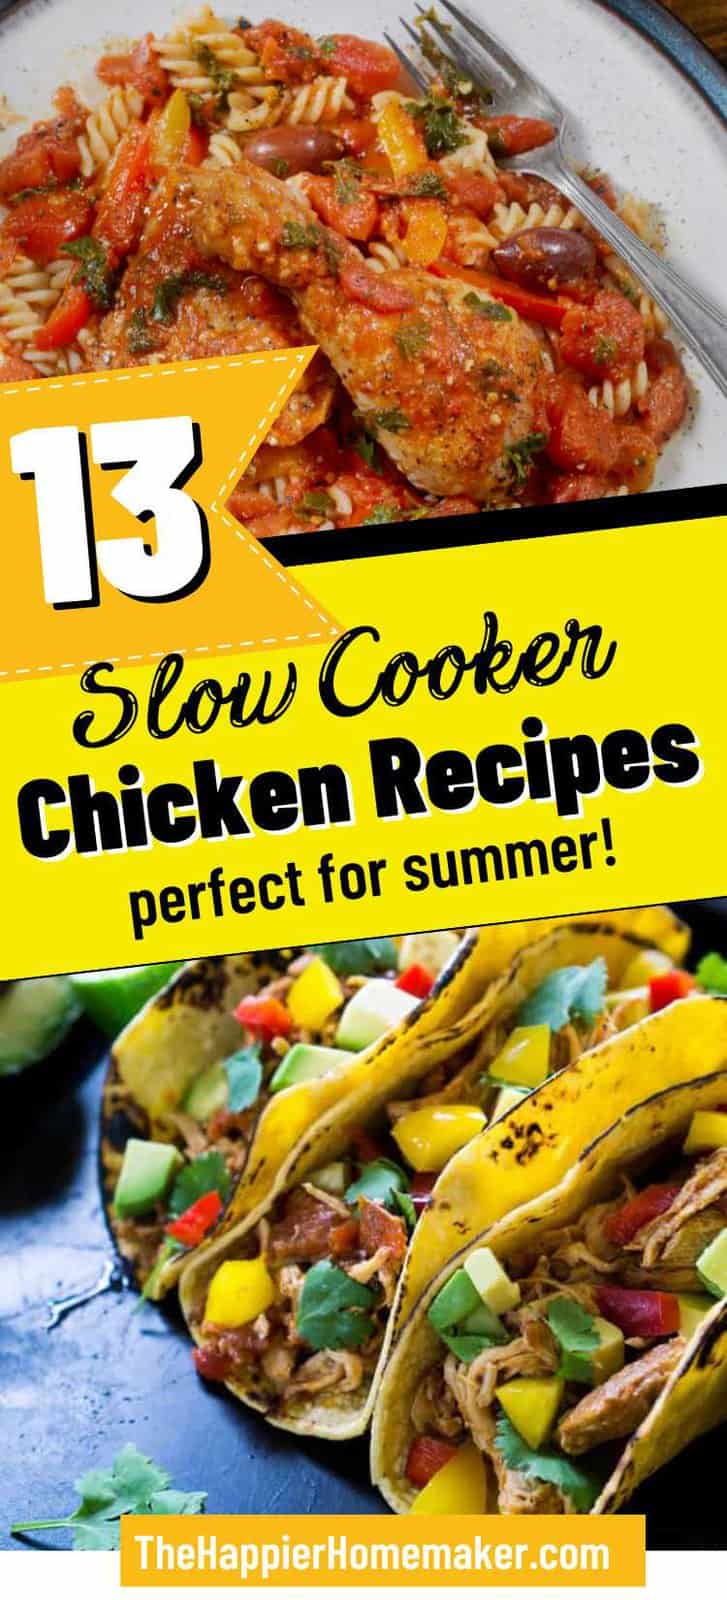 13 Easy Summer Chicken Crock Pot Recipes - The Happier Homemaker